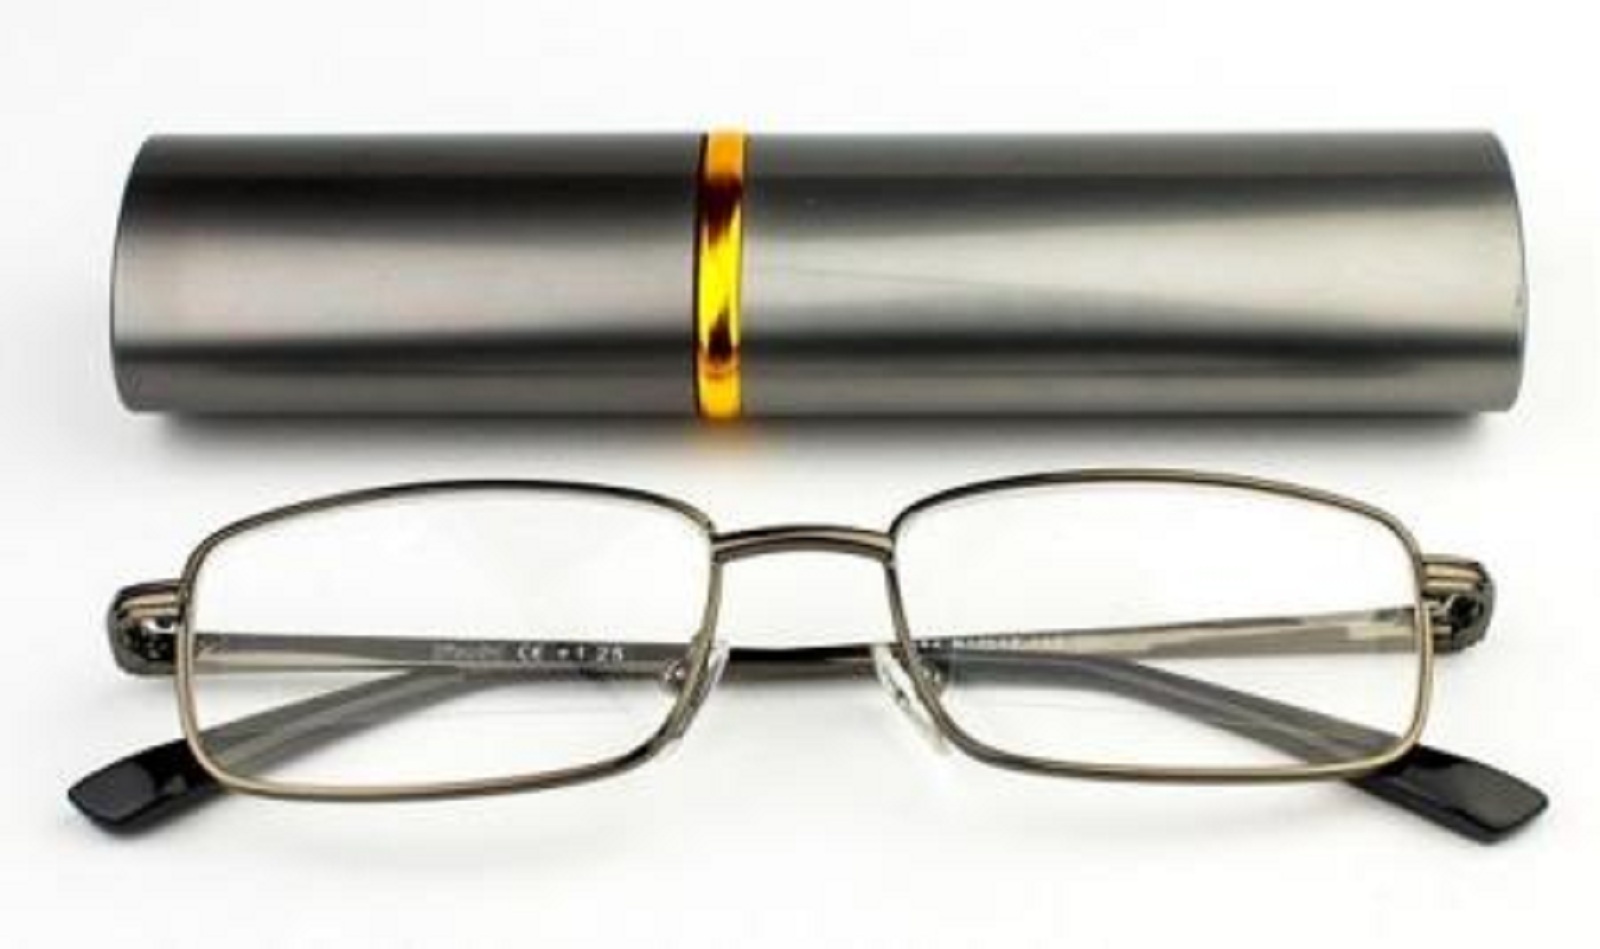 Очки 1.5 мужские купить. Очки для чтения Vizzini. Очки для чтения READLNG Glasses РЦ 62-64 +2,5. Очки для чтения Vizzini 1. Очки для чтения в футляре 199р.